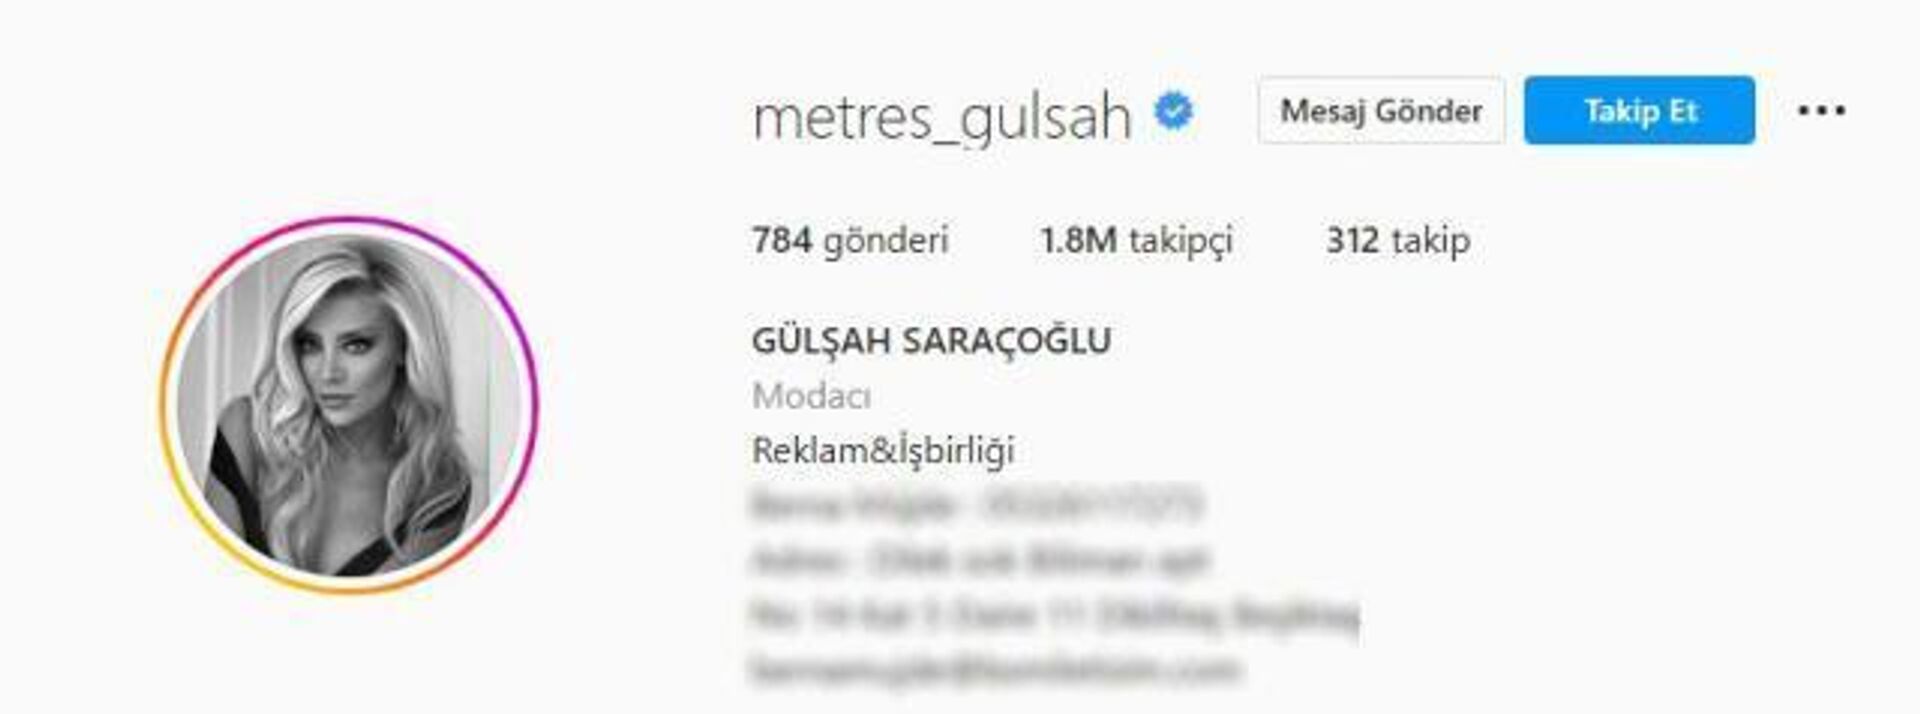 Gülşah Saraçoğlu'nun Instagram hesabı dün akşam hacklenerek adı ‘metres_gulsah’ olarak değiştirildi. - Sputnik Türkiye, 1920, 26.10.2022